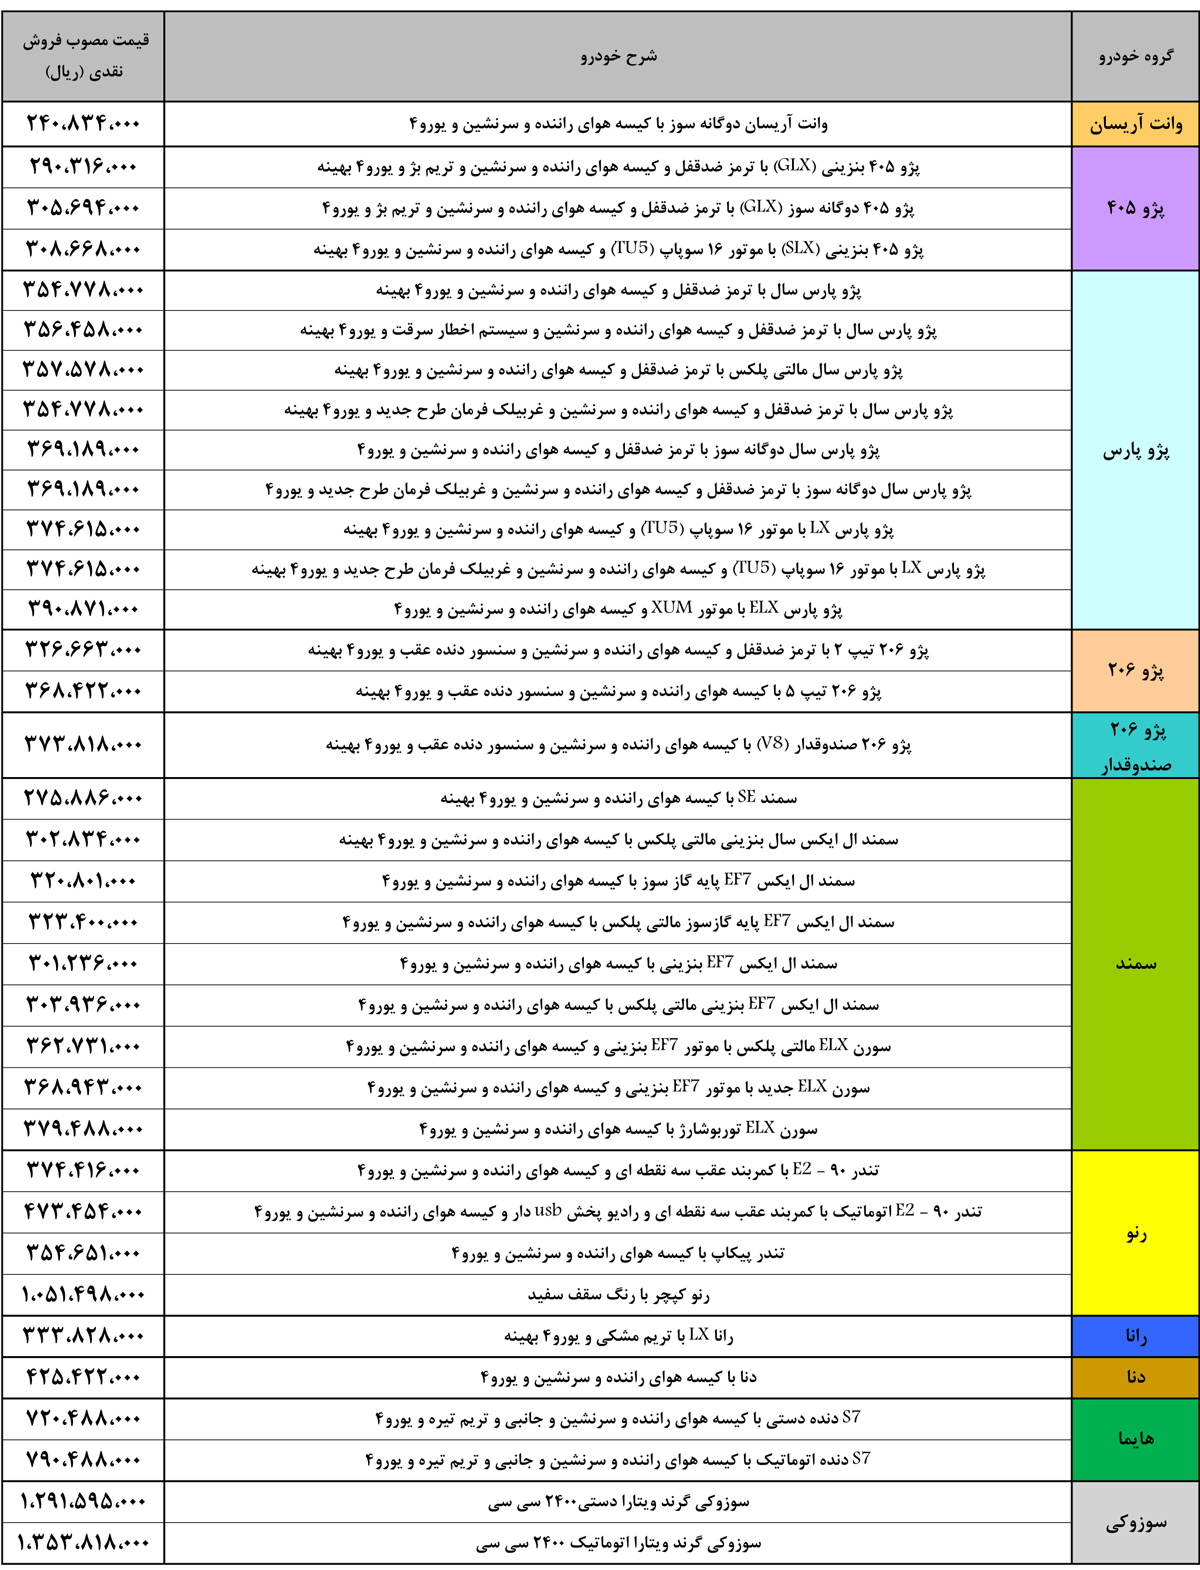 قیمت محصولات ایران خودرو و سایپا در سال 95 اعلام شد +جدول